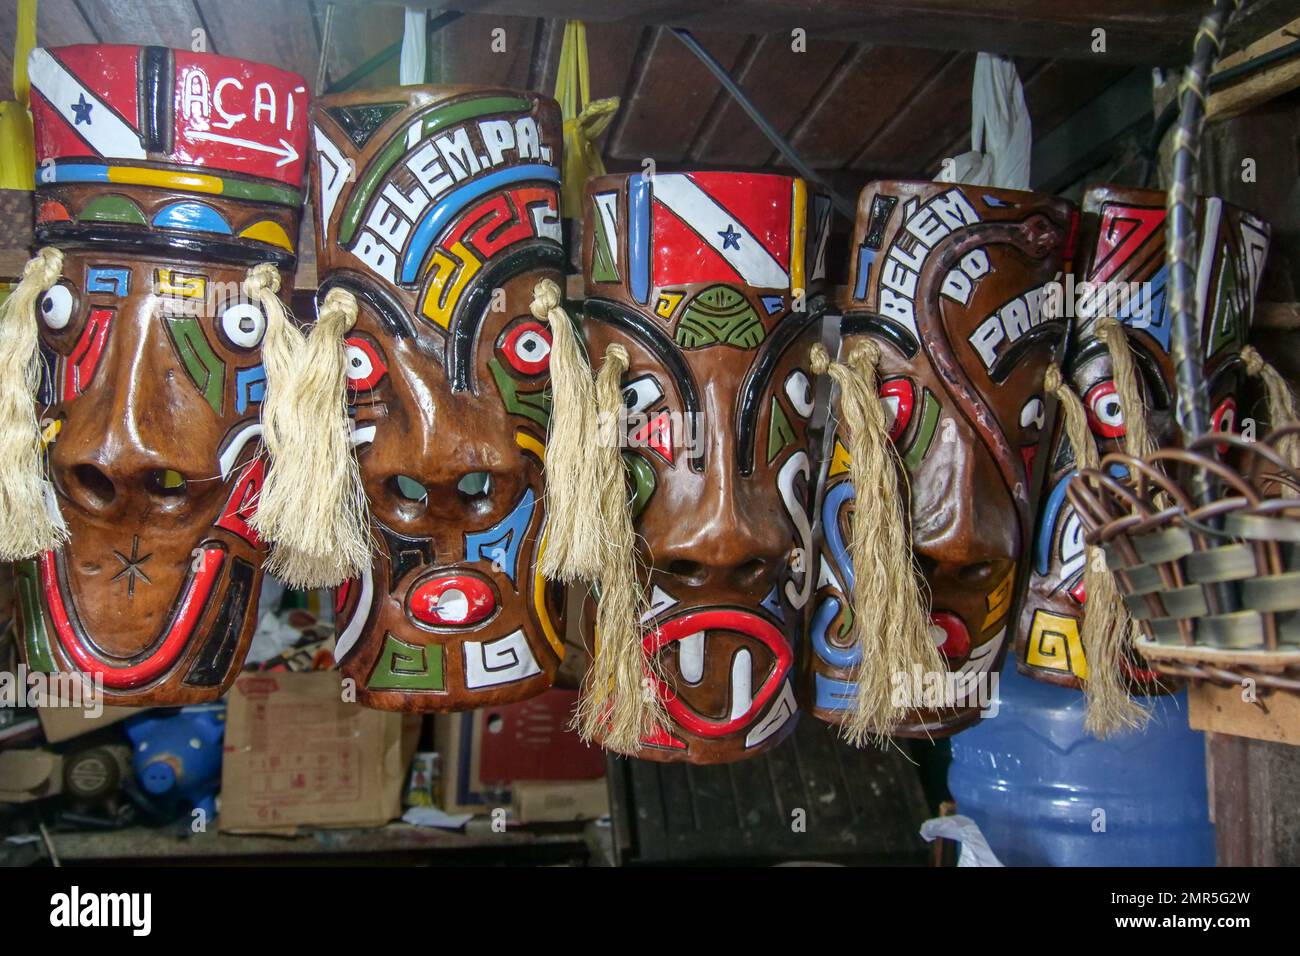 Hölzerne Masken von amazoniern an einem Curio-Stand. Standort: Mercado Ver o Peso, Belem, Bundesstaat para, Amazonasregion, Brasilien, Südamerika Stockfoto